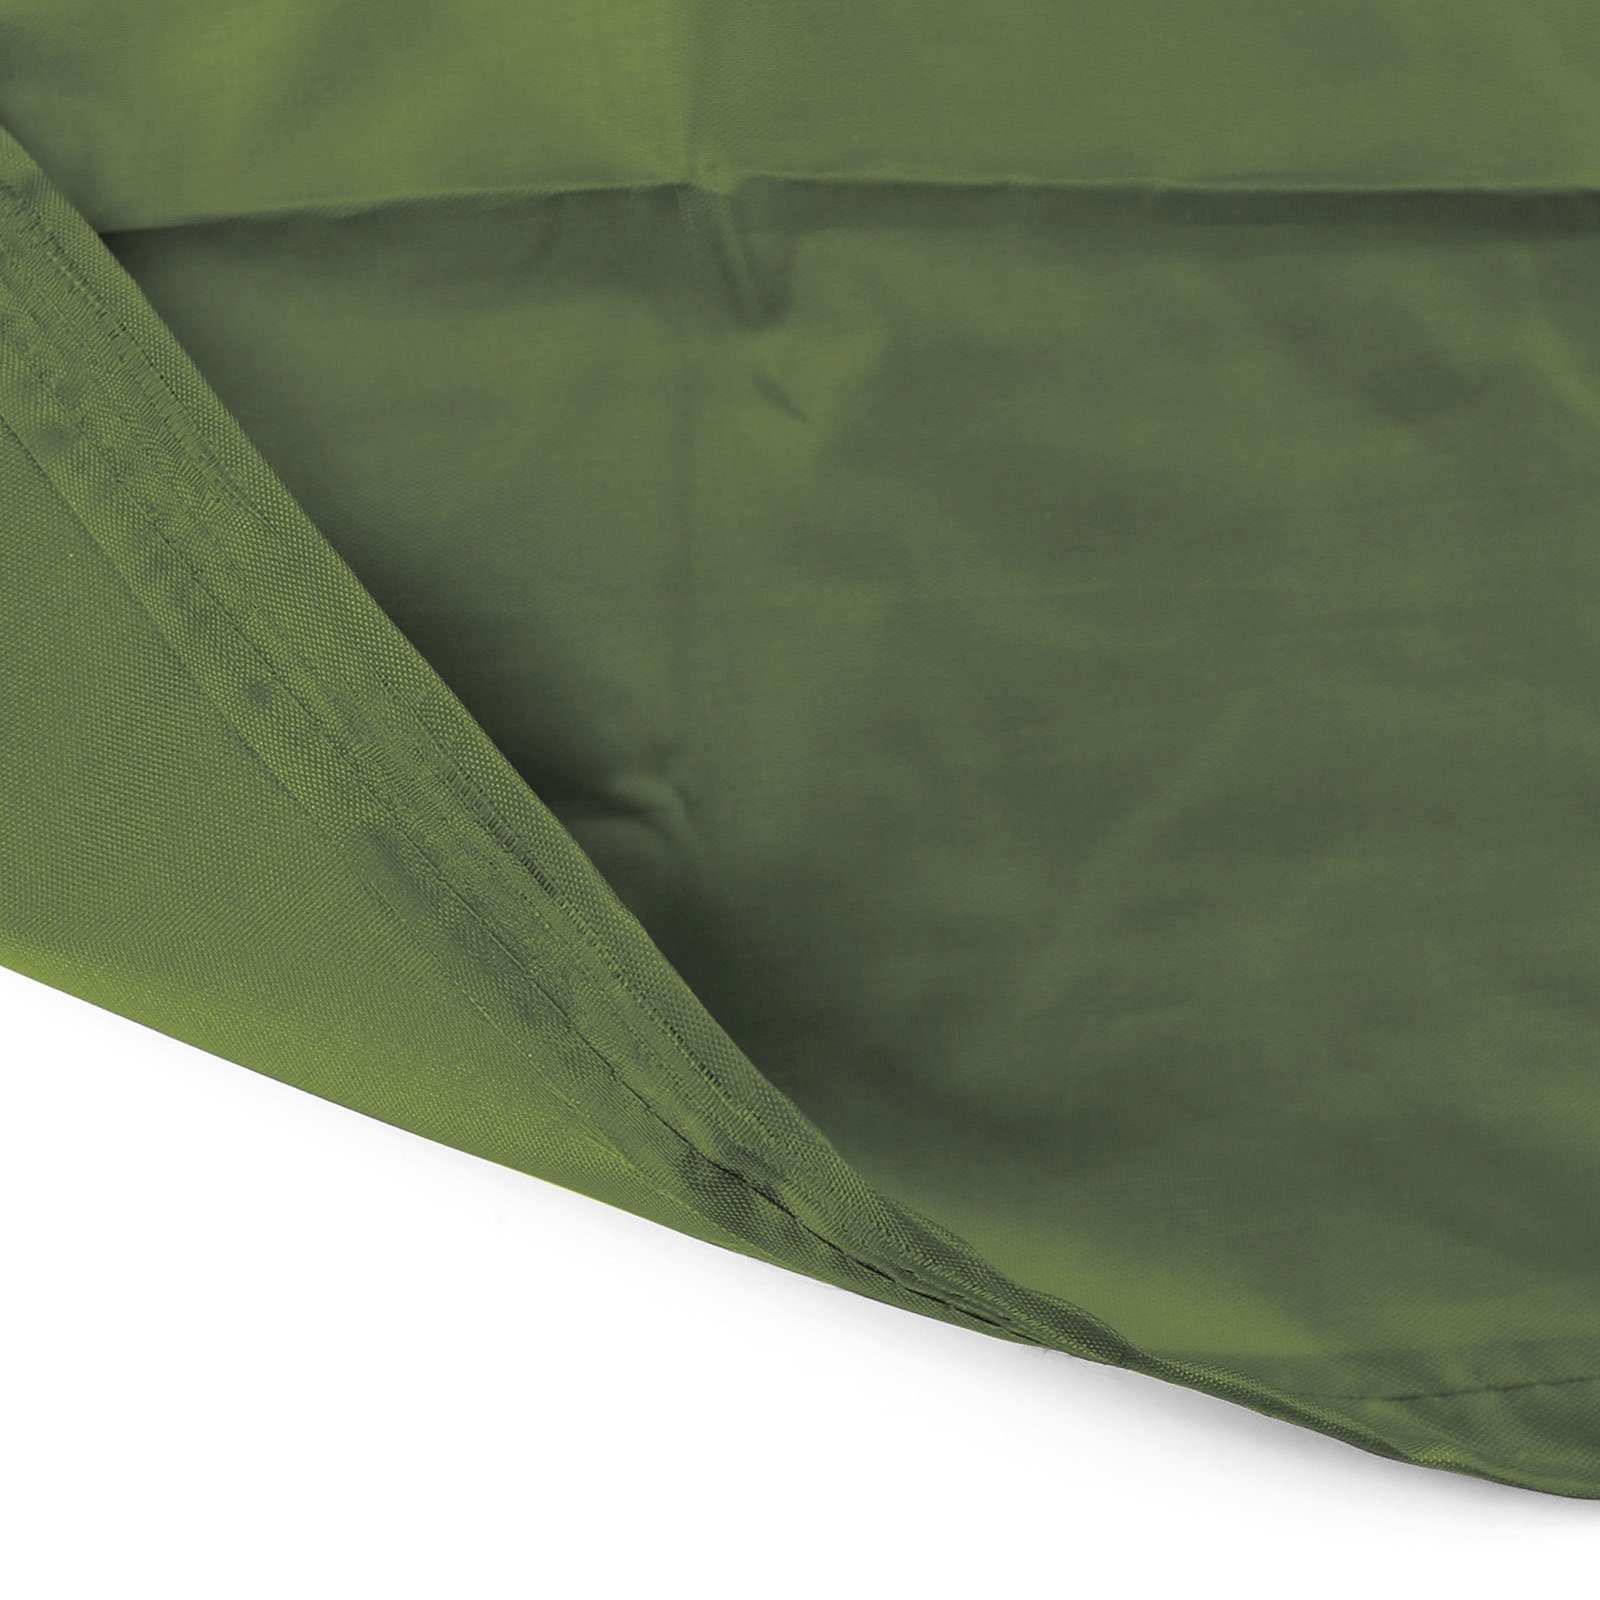 RAMROXX Hängesessel Premium Schutzabdeckung 190x100cm für Hängesessel Cover Grün Schutzhülle